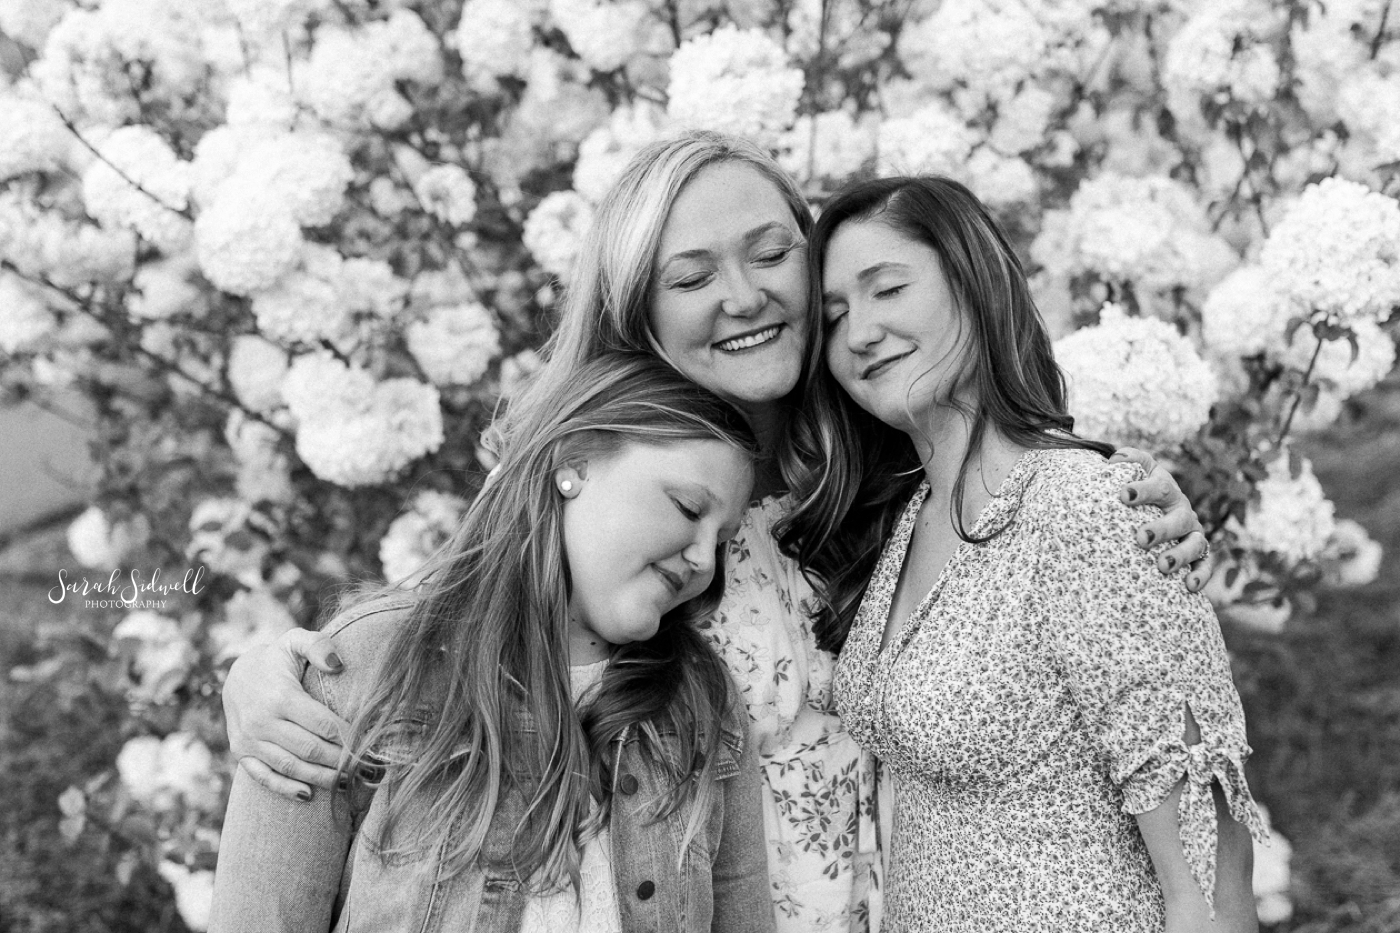 Nashville Family Photos | Atkinson Ladies